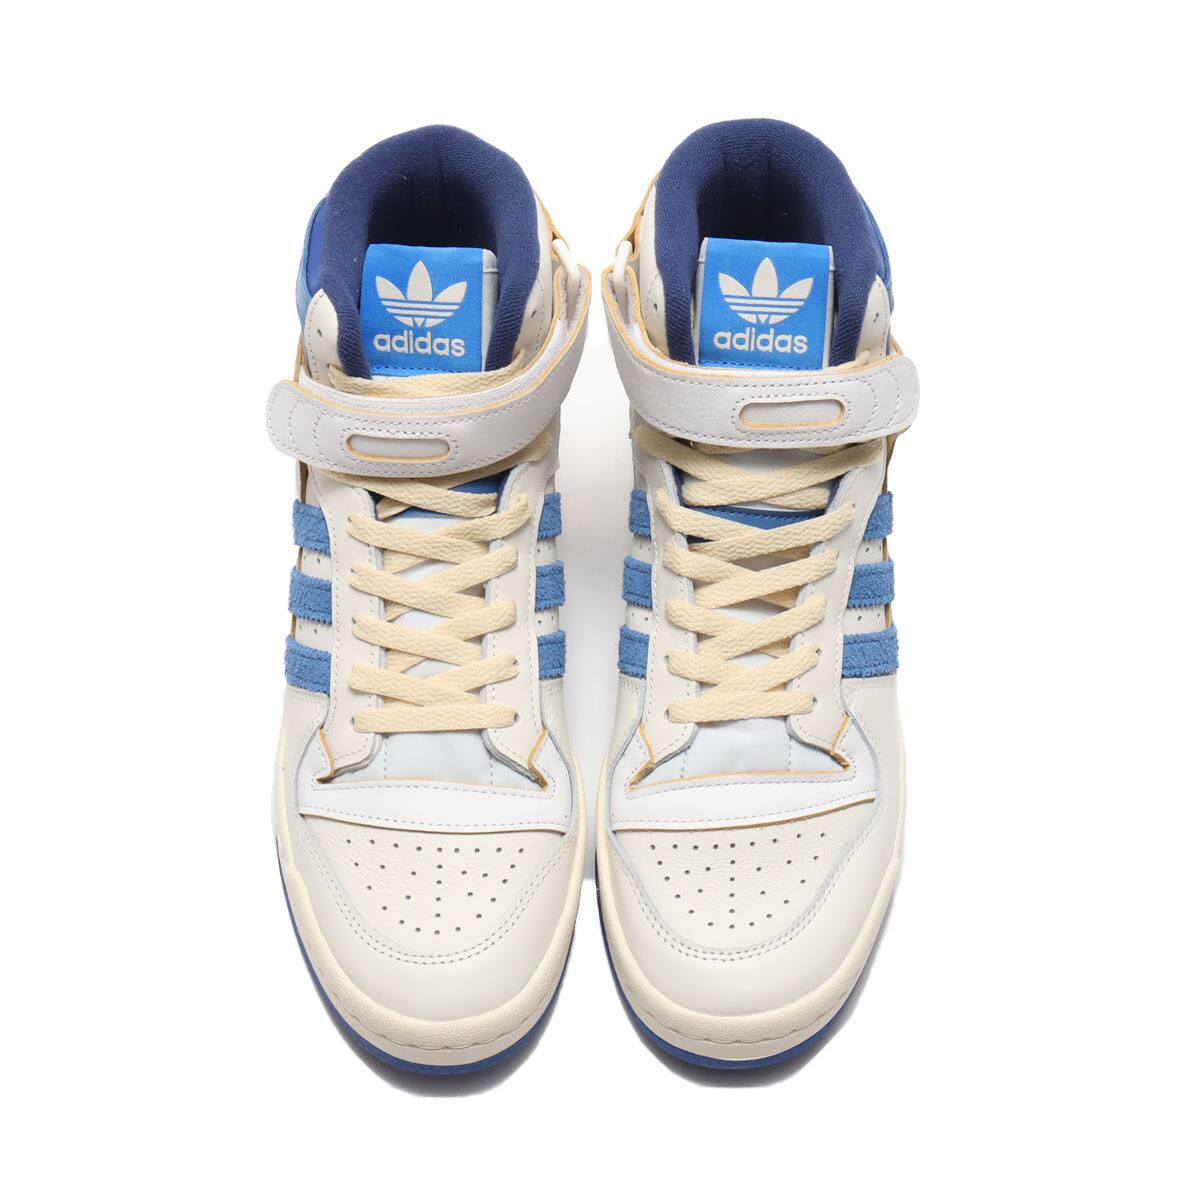 adidas FORUM 84 HIGH BLUE THREAD OFF WHITE/BRIGHT BLUE/FOOTWEAR 